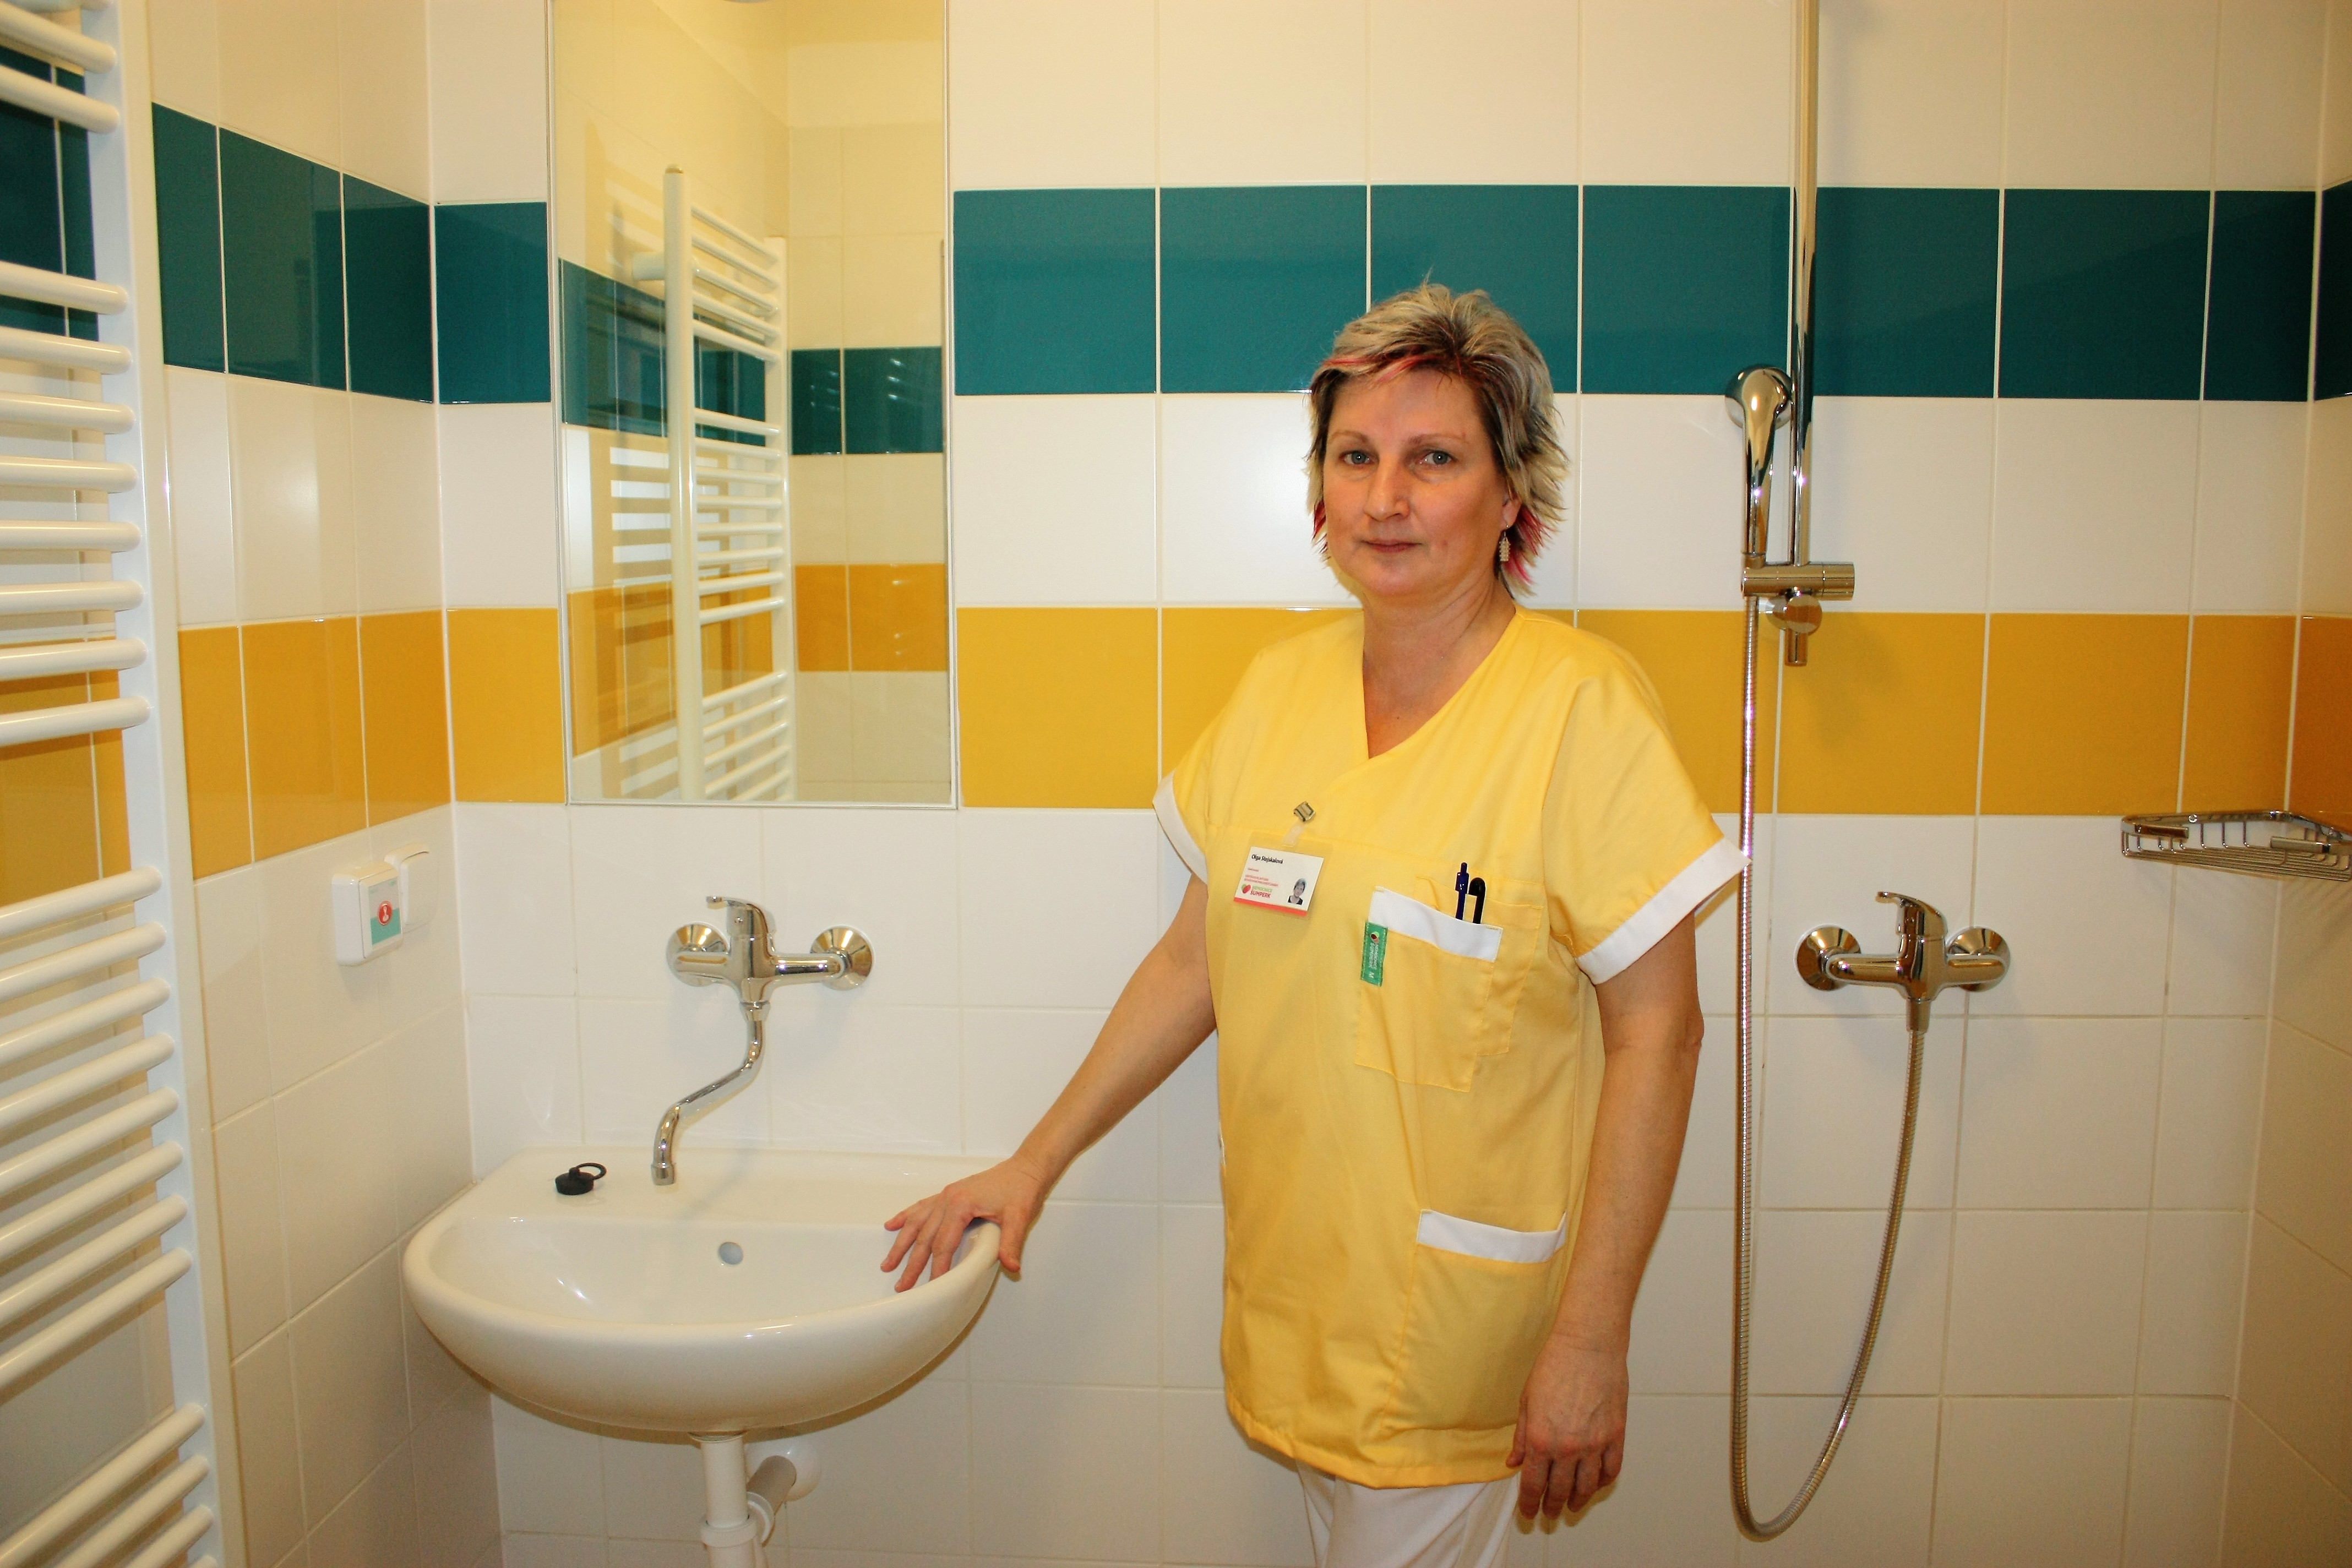 Šumperská nemocnice otevřela v Zábřehu nová lůžka následné péče foto: H. Hanke - NŠ